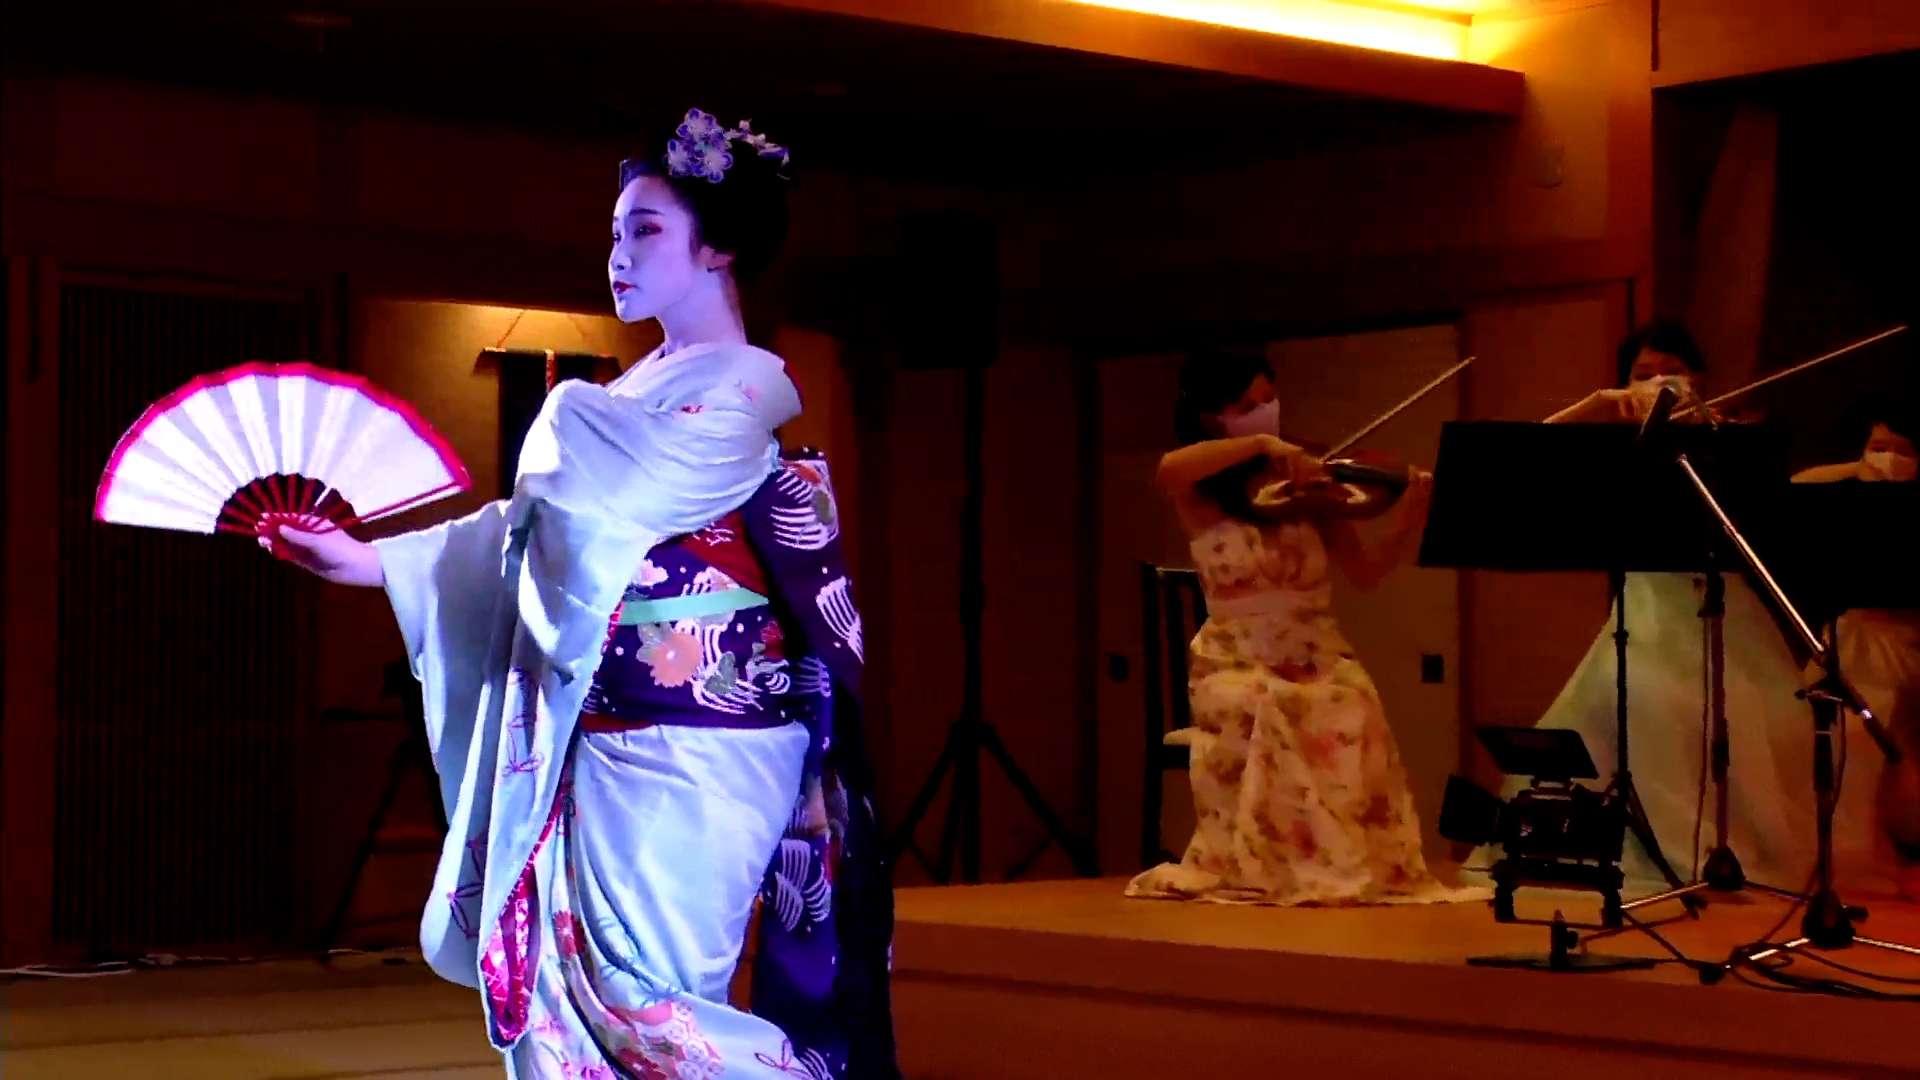 ホテルパーティーに和の彩りを: 伝統芸能による日本の美のアトラクション余興